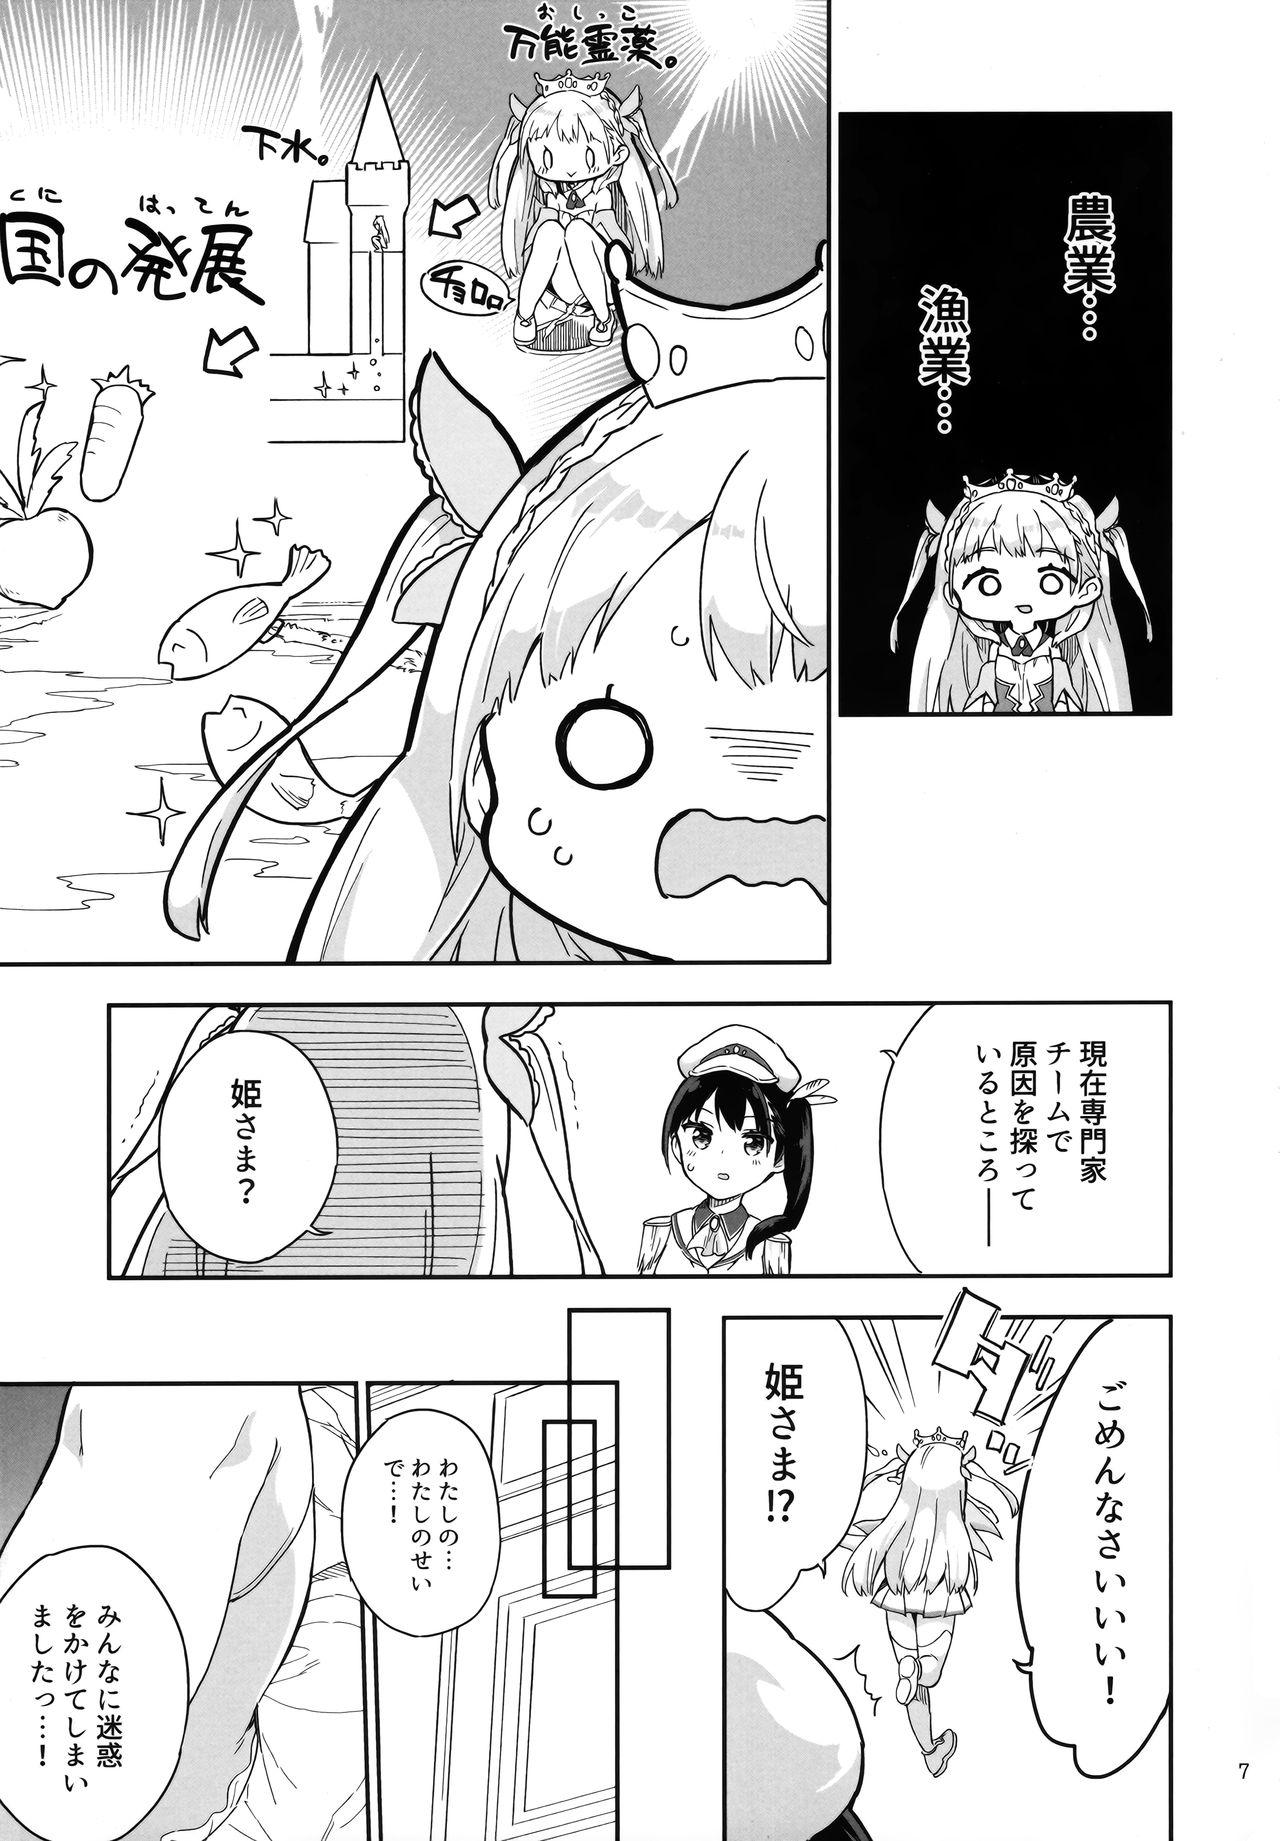 Pegging Hime-sama Sore wa Seisui desu ka? 3 Gang - Page 6